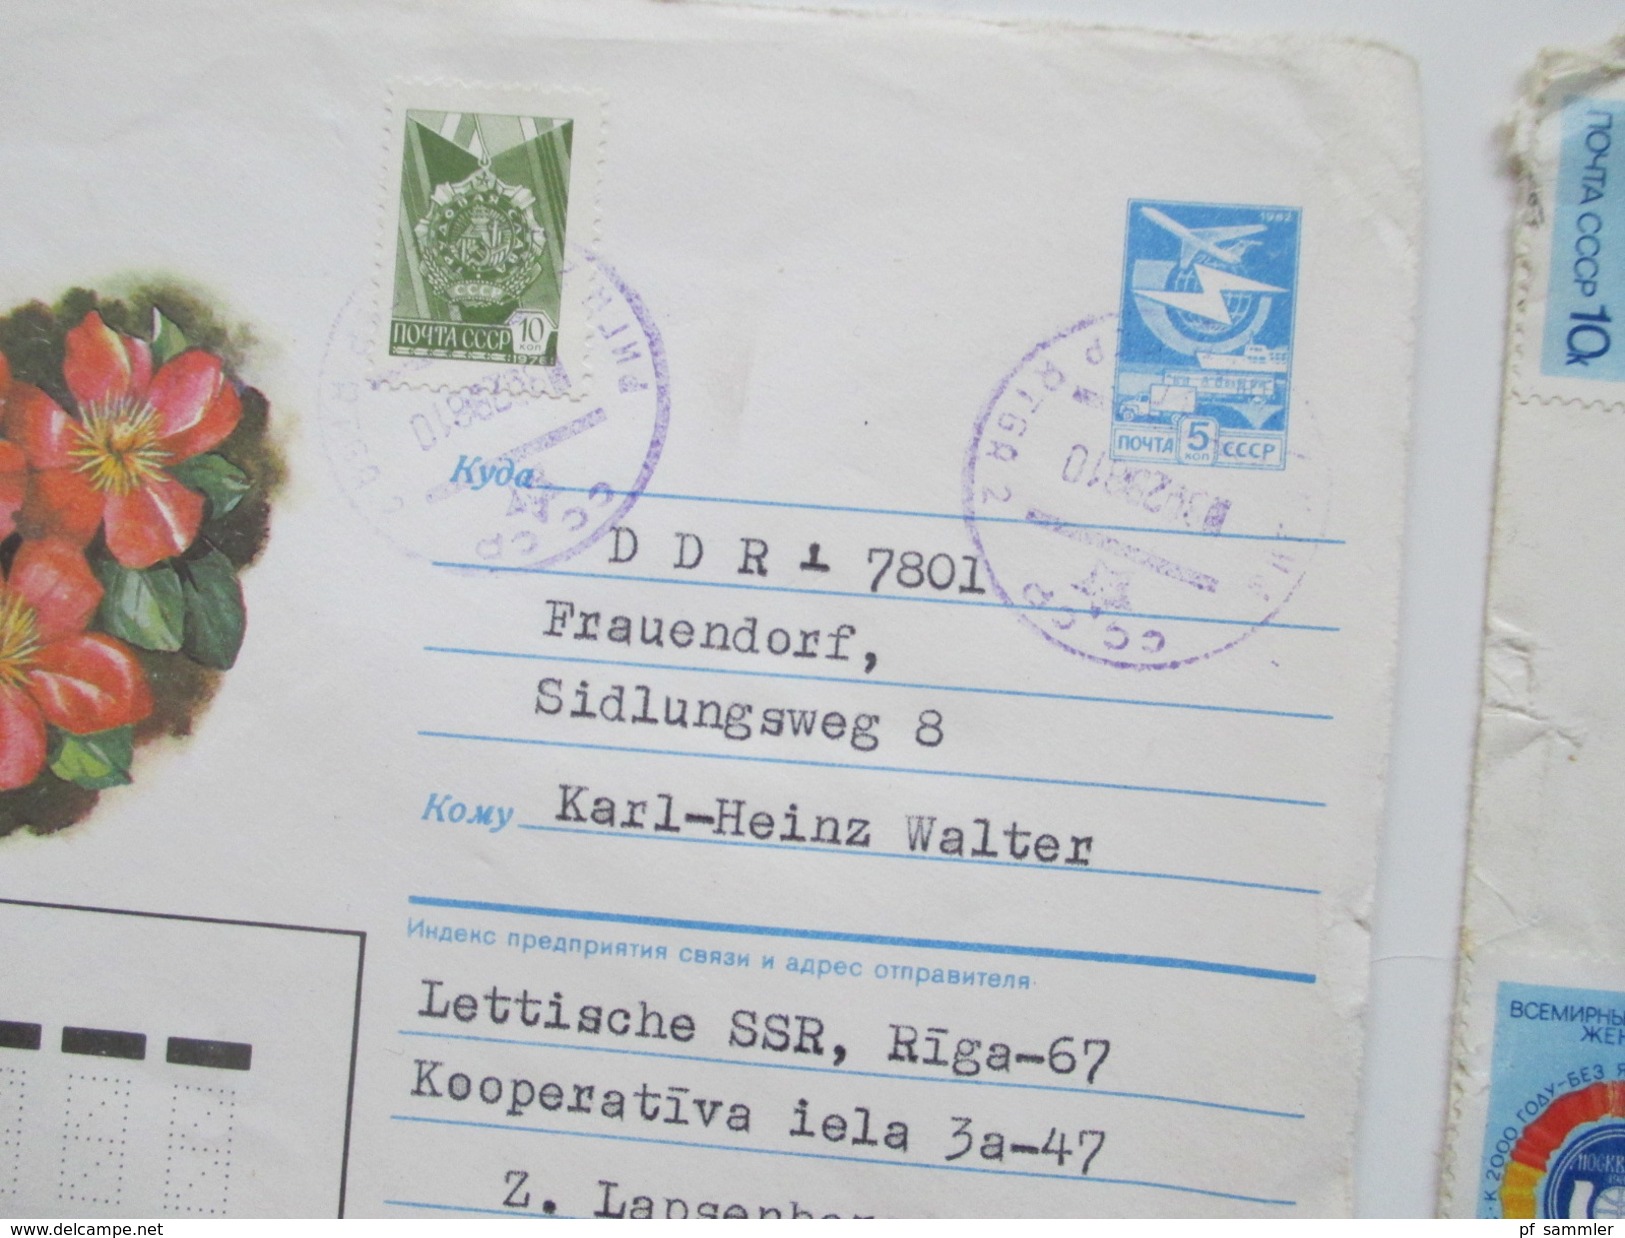 UDSSR GA / Belegeposten 140 Stk. Auch Riga / Pärnu / Lettland. R.S.S. de Lettonie. Weltraum usw. 1960 - 80er Jahre